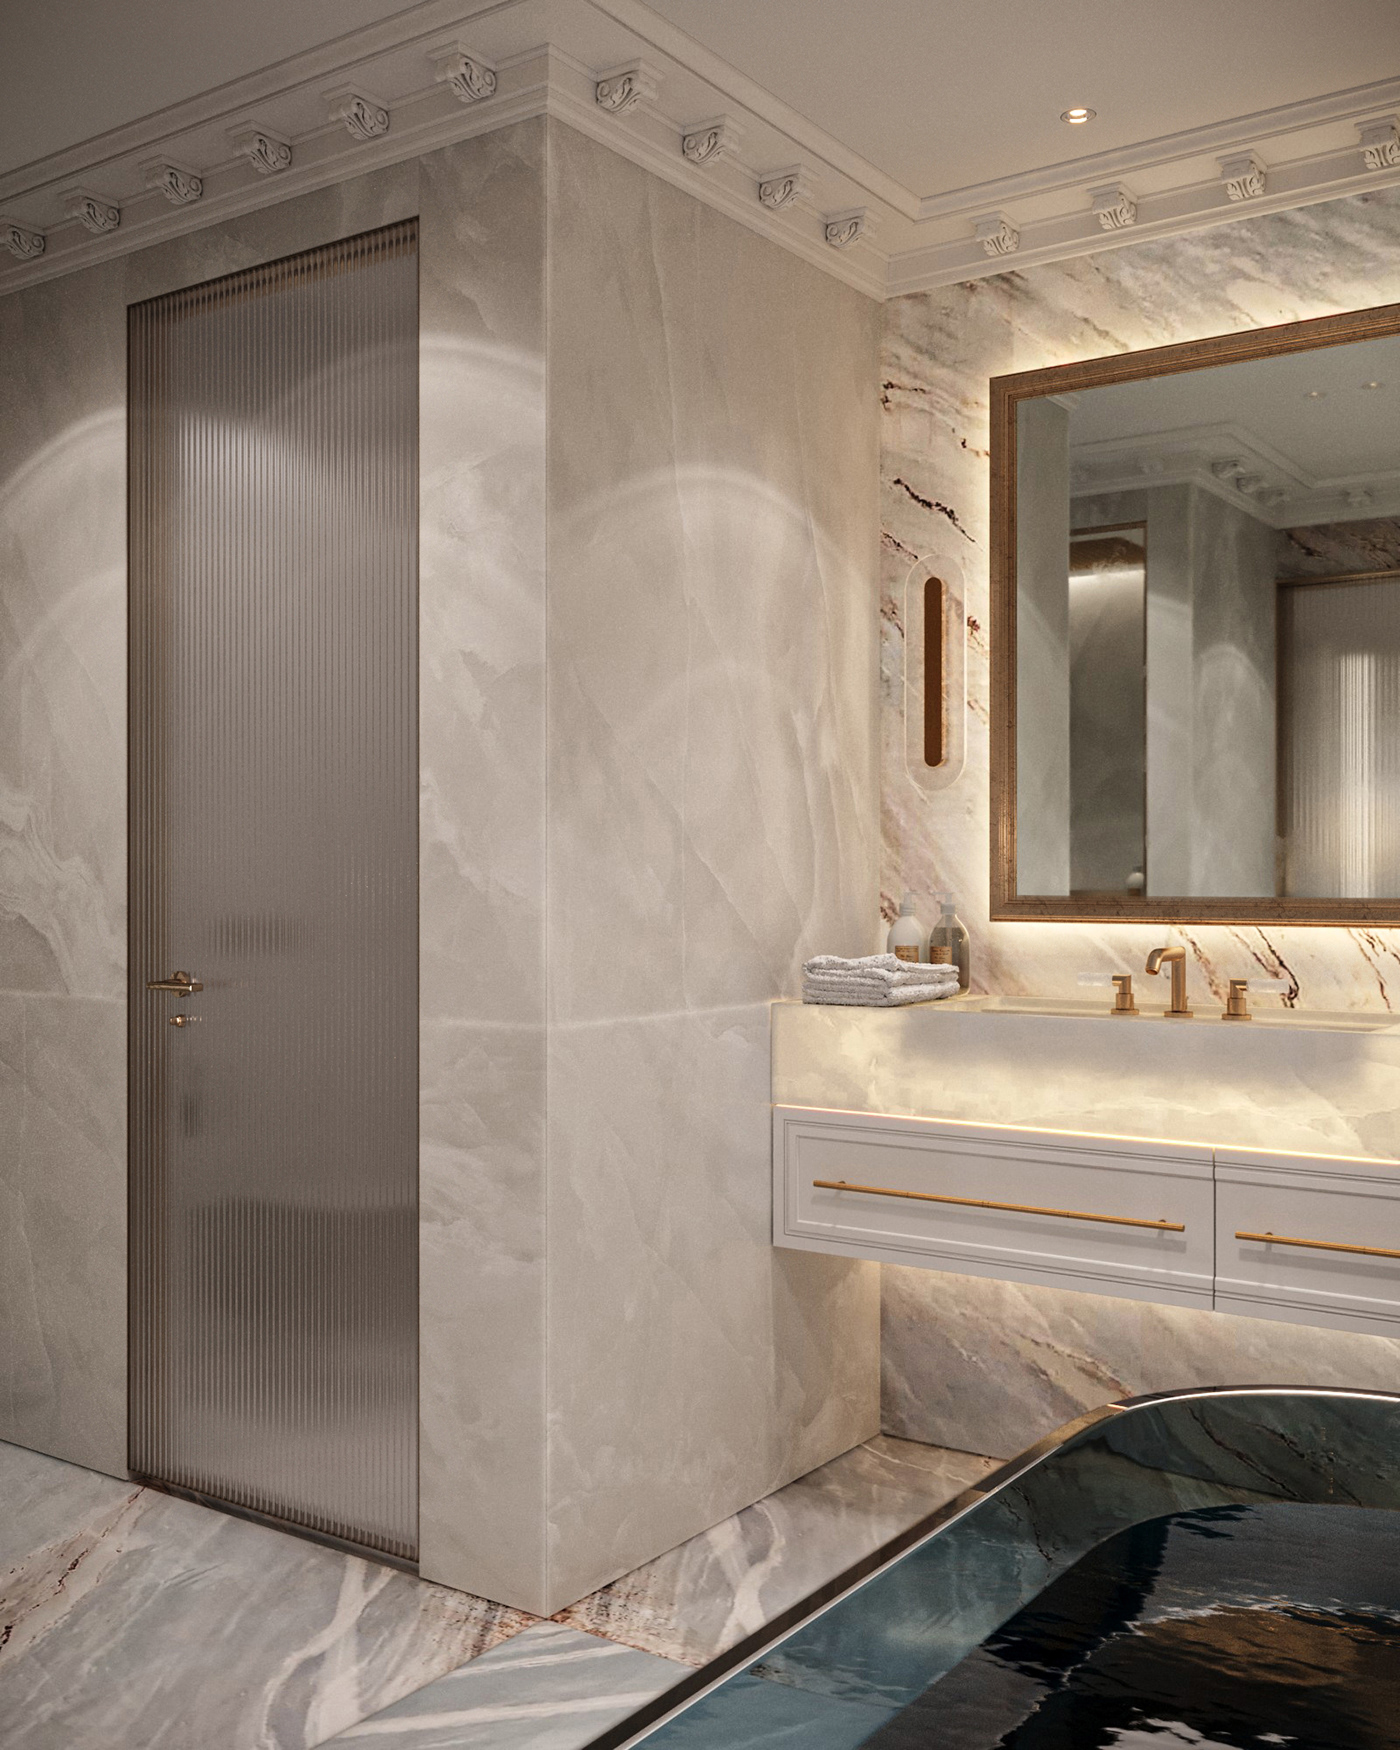 bathroom design visualization archviz interior design  Визуализация интерьера дизайн интерьера ванная комната дизайн ванной Санузел Interior Visualization